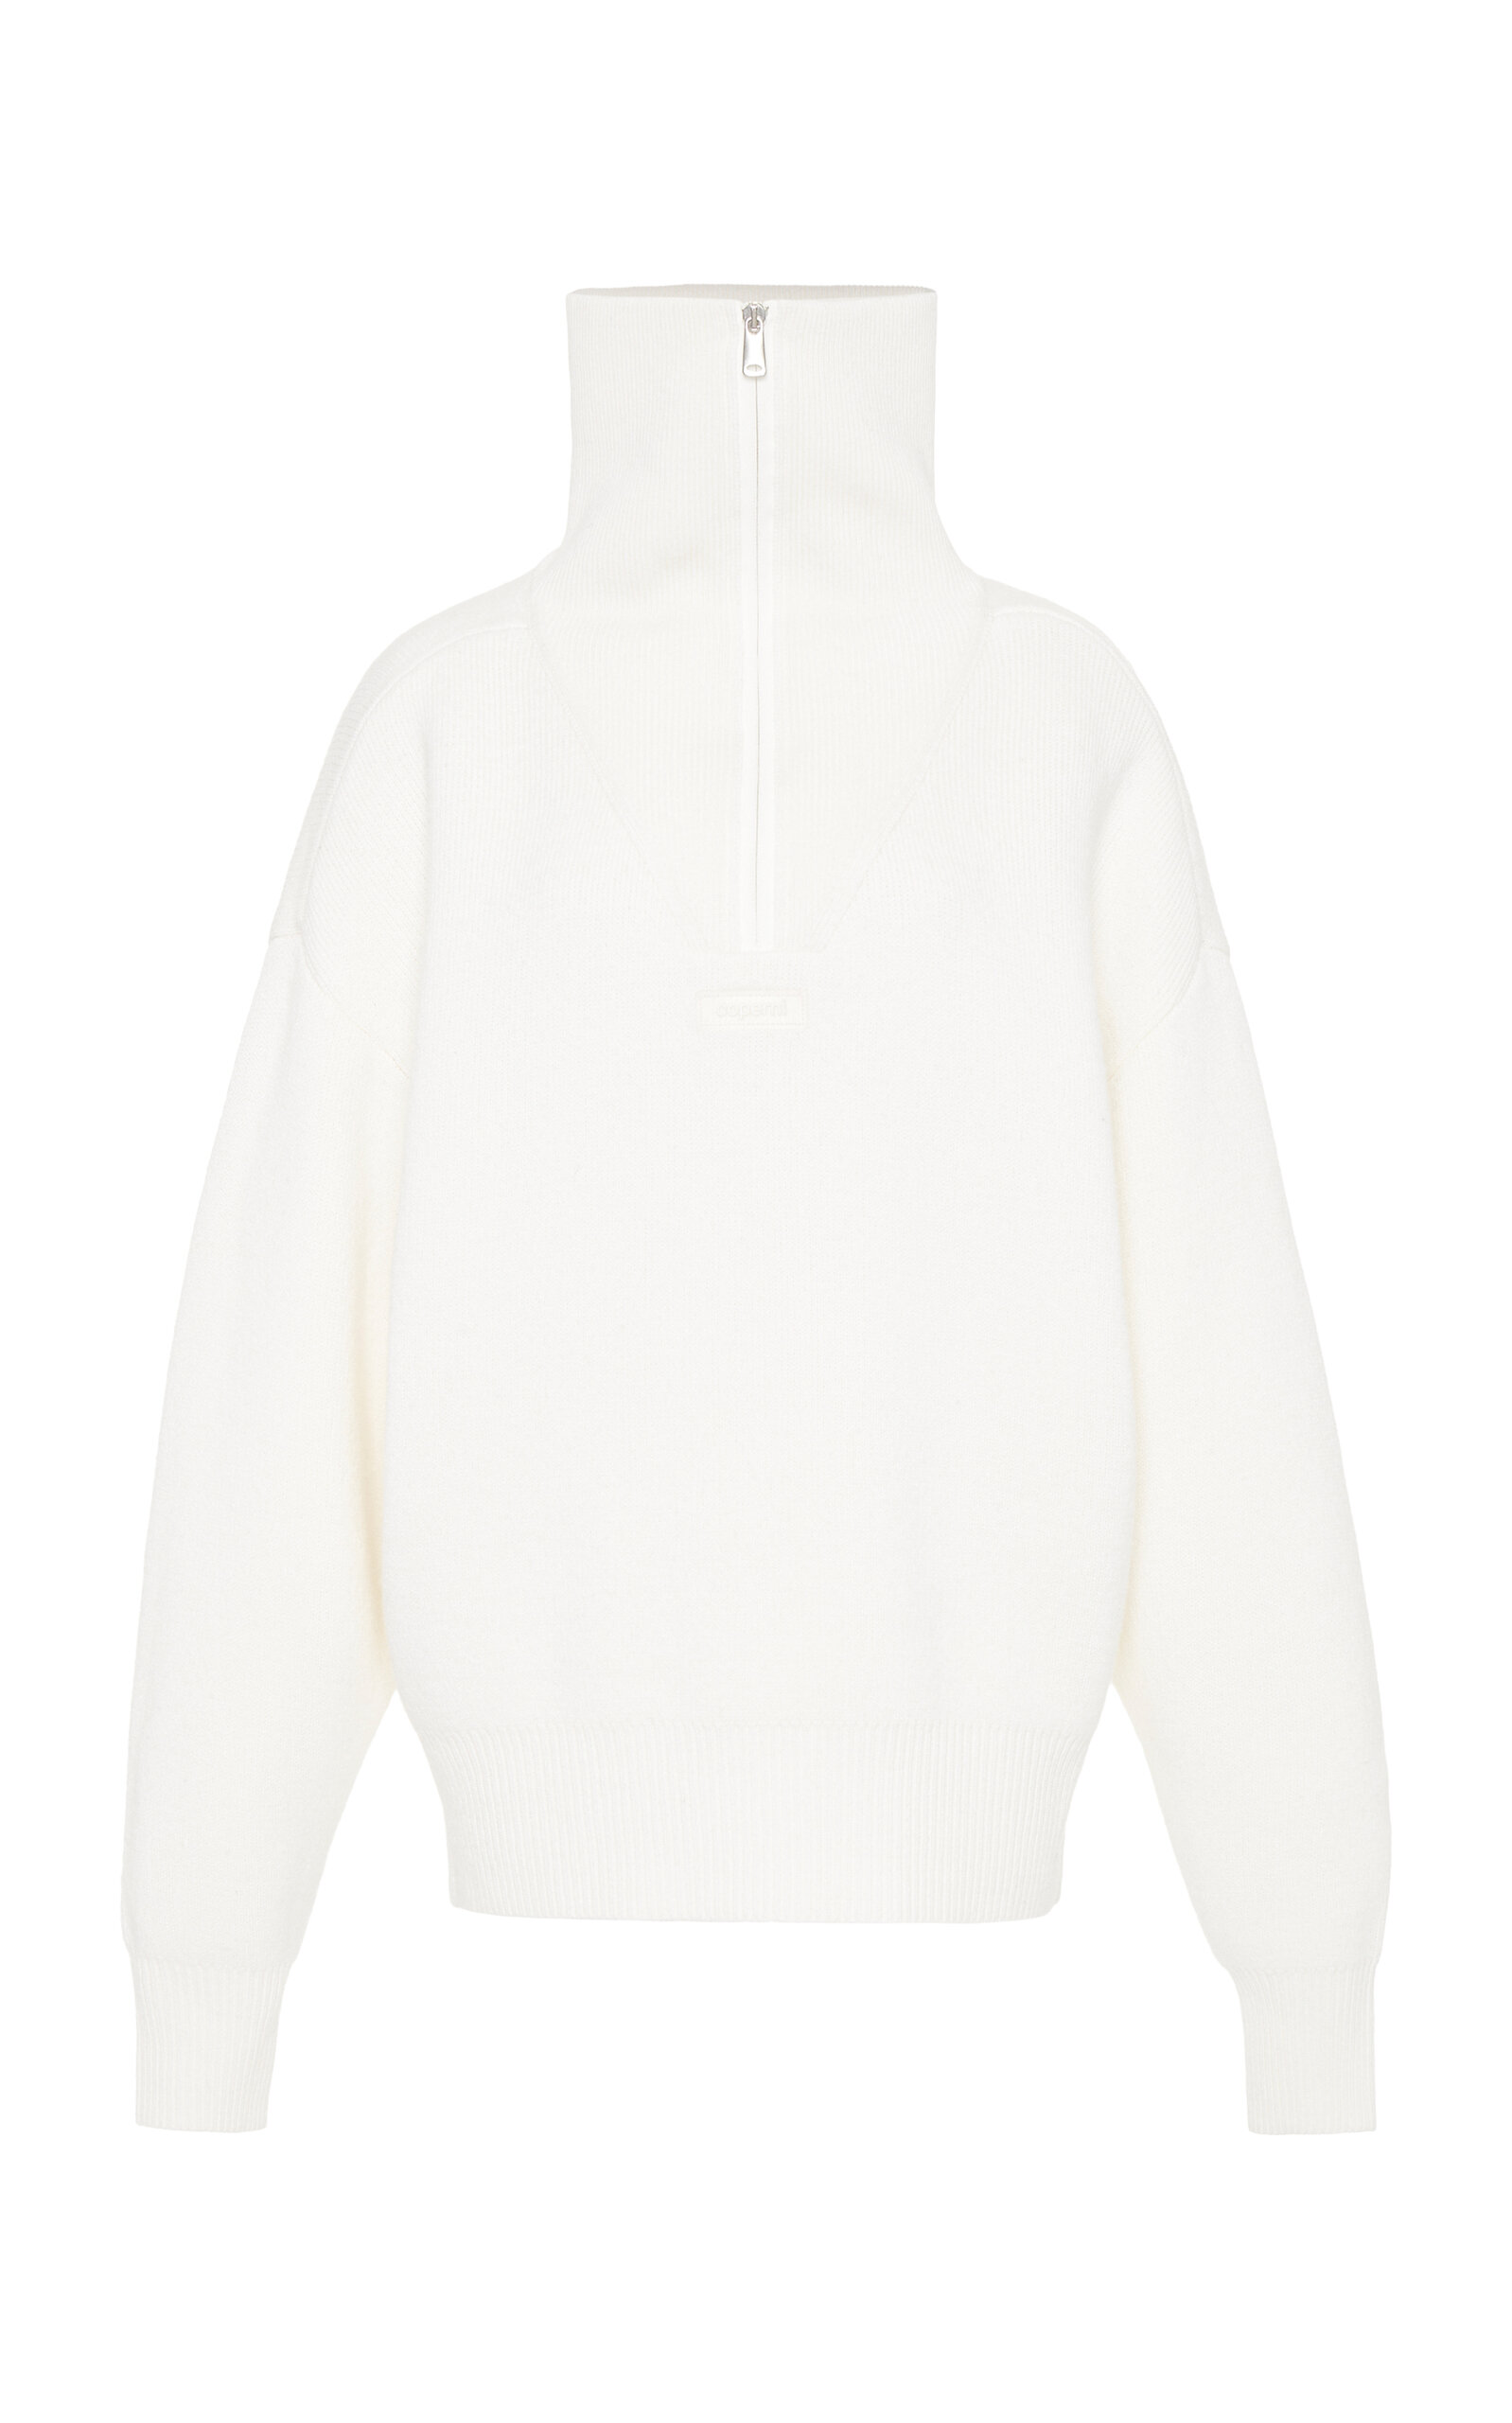 Coperni - Half-Zip Pullover Sweater - White - XS - Moda Operandi